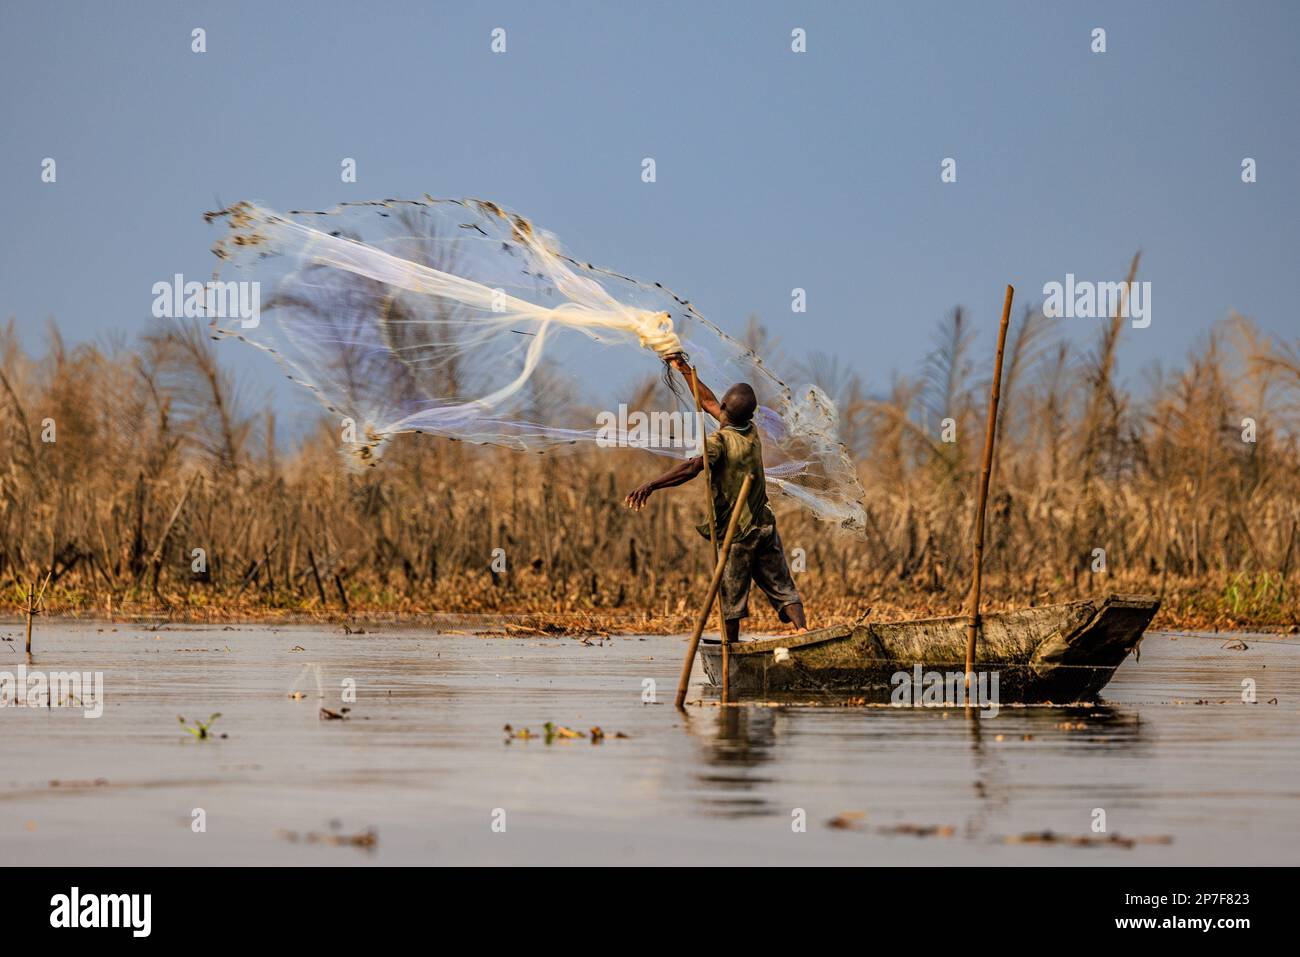 il pescatore tradizionale lancia la sua rete di pesca circolare pesata alta nel nokwie del lago a ganvie in benin Foto Stock